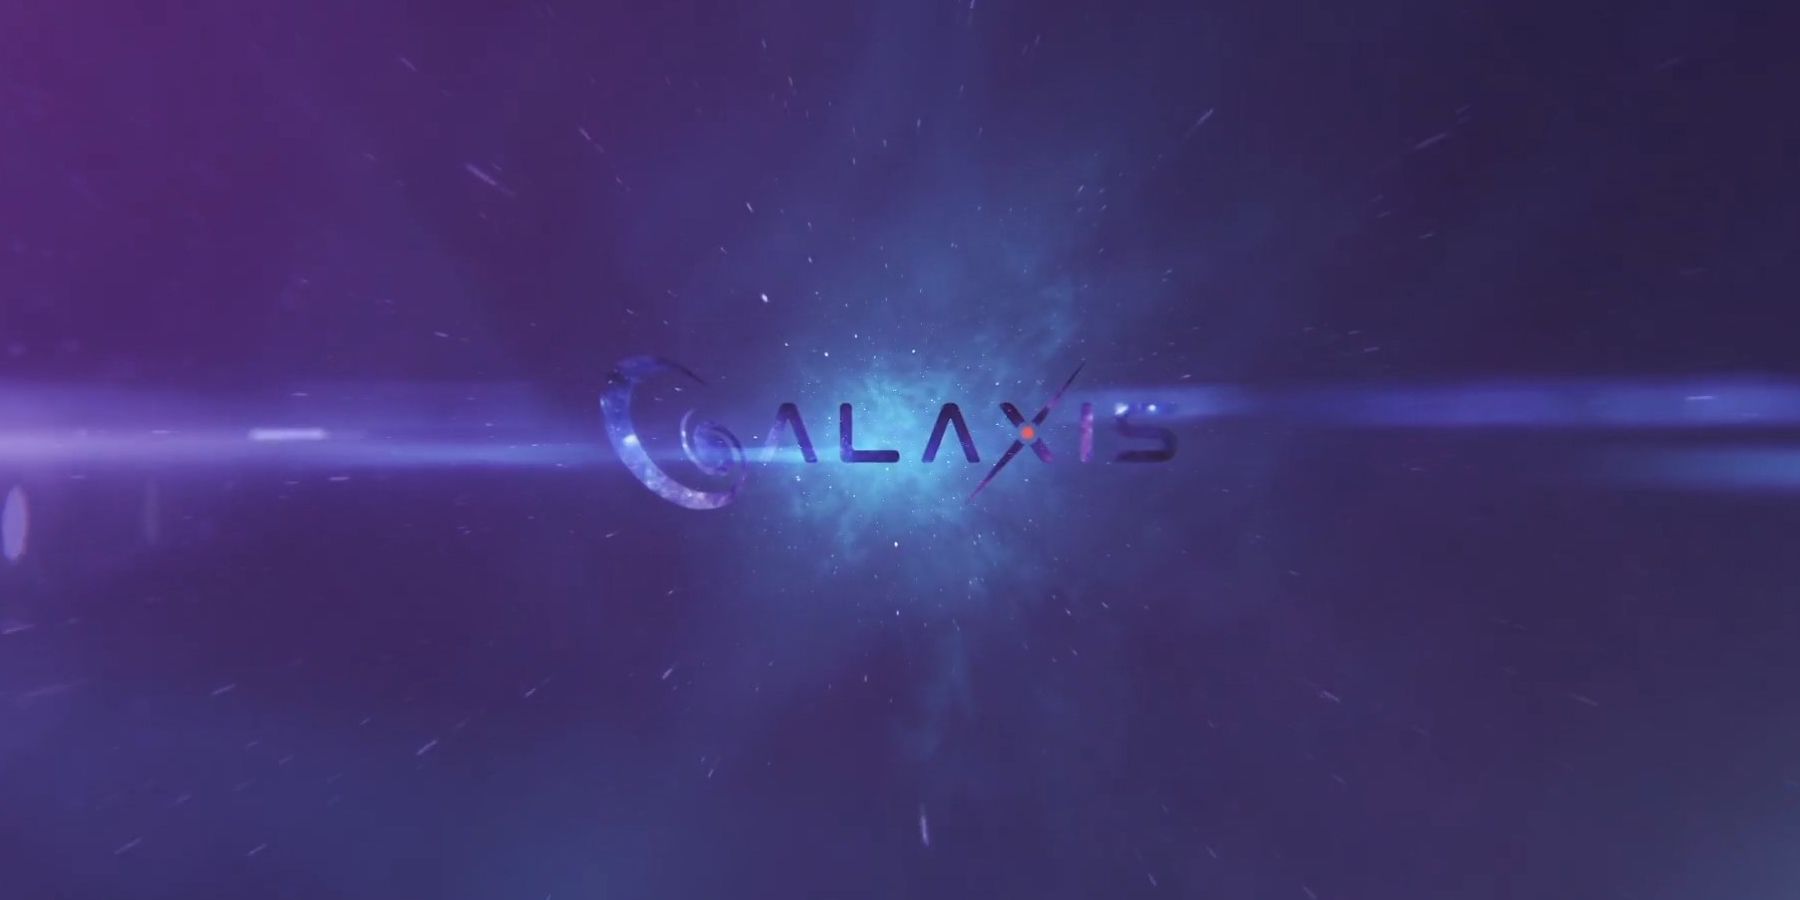 Entrevista de la galaxis: el CEO Max Gallardo detalla los sistemas de puntos de la plataforma de transmisión, la moderación de la comunidad y más